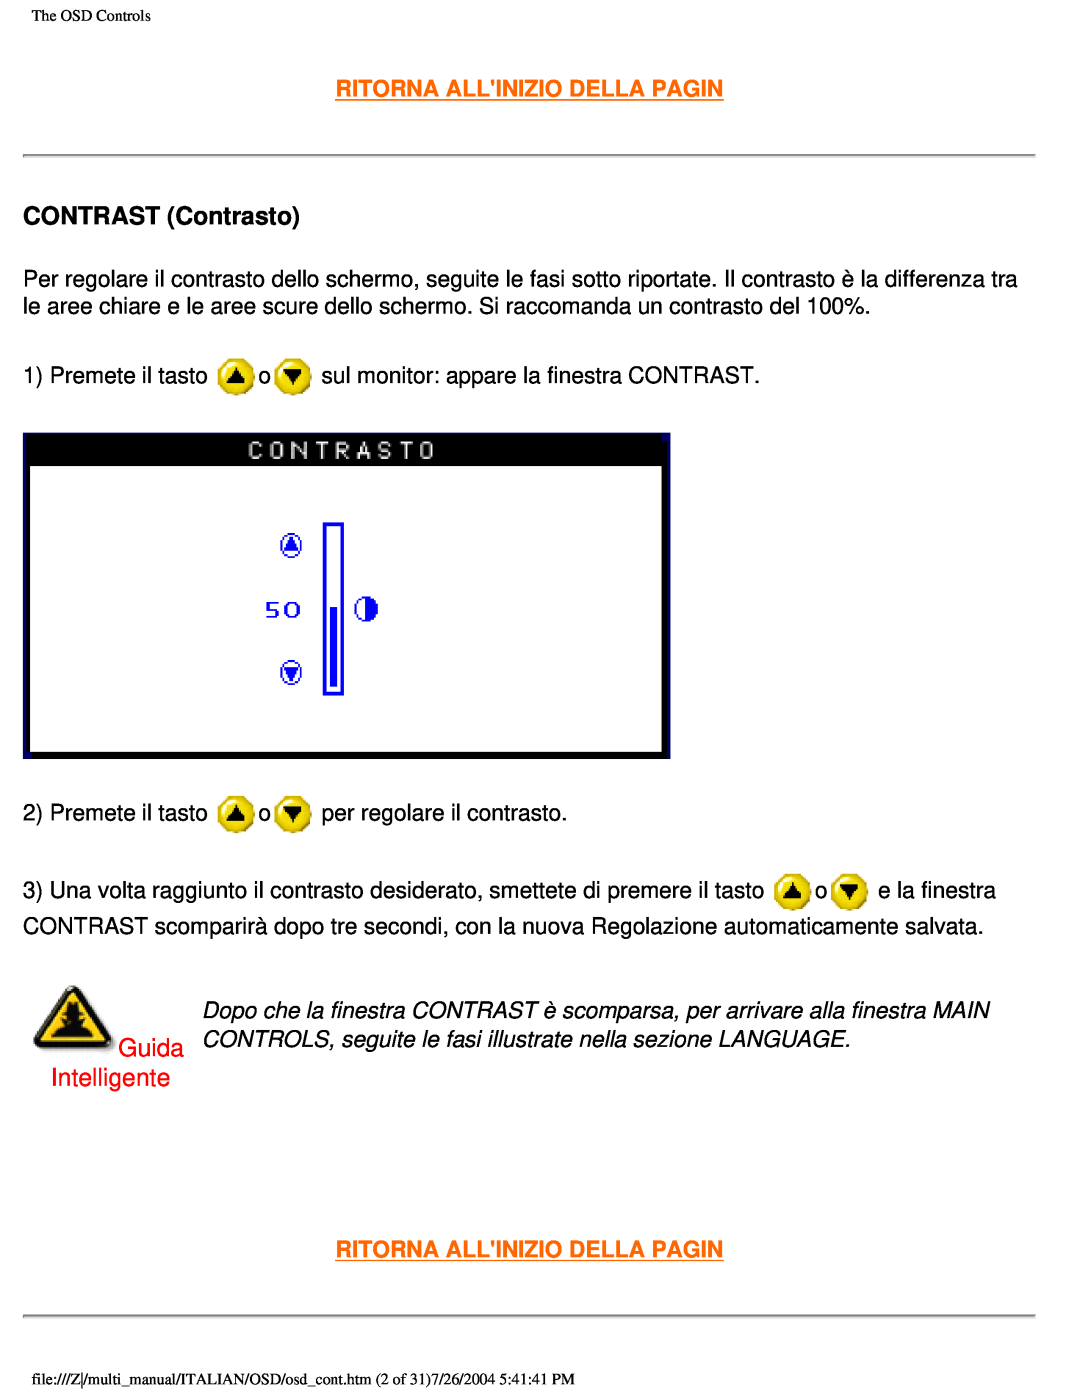 Philips 201B user manual CONTRAST Contrasto, Intelligente, Ritorna Allinizio Della Pagin 